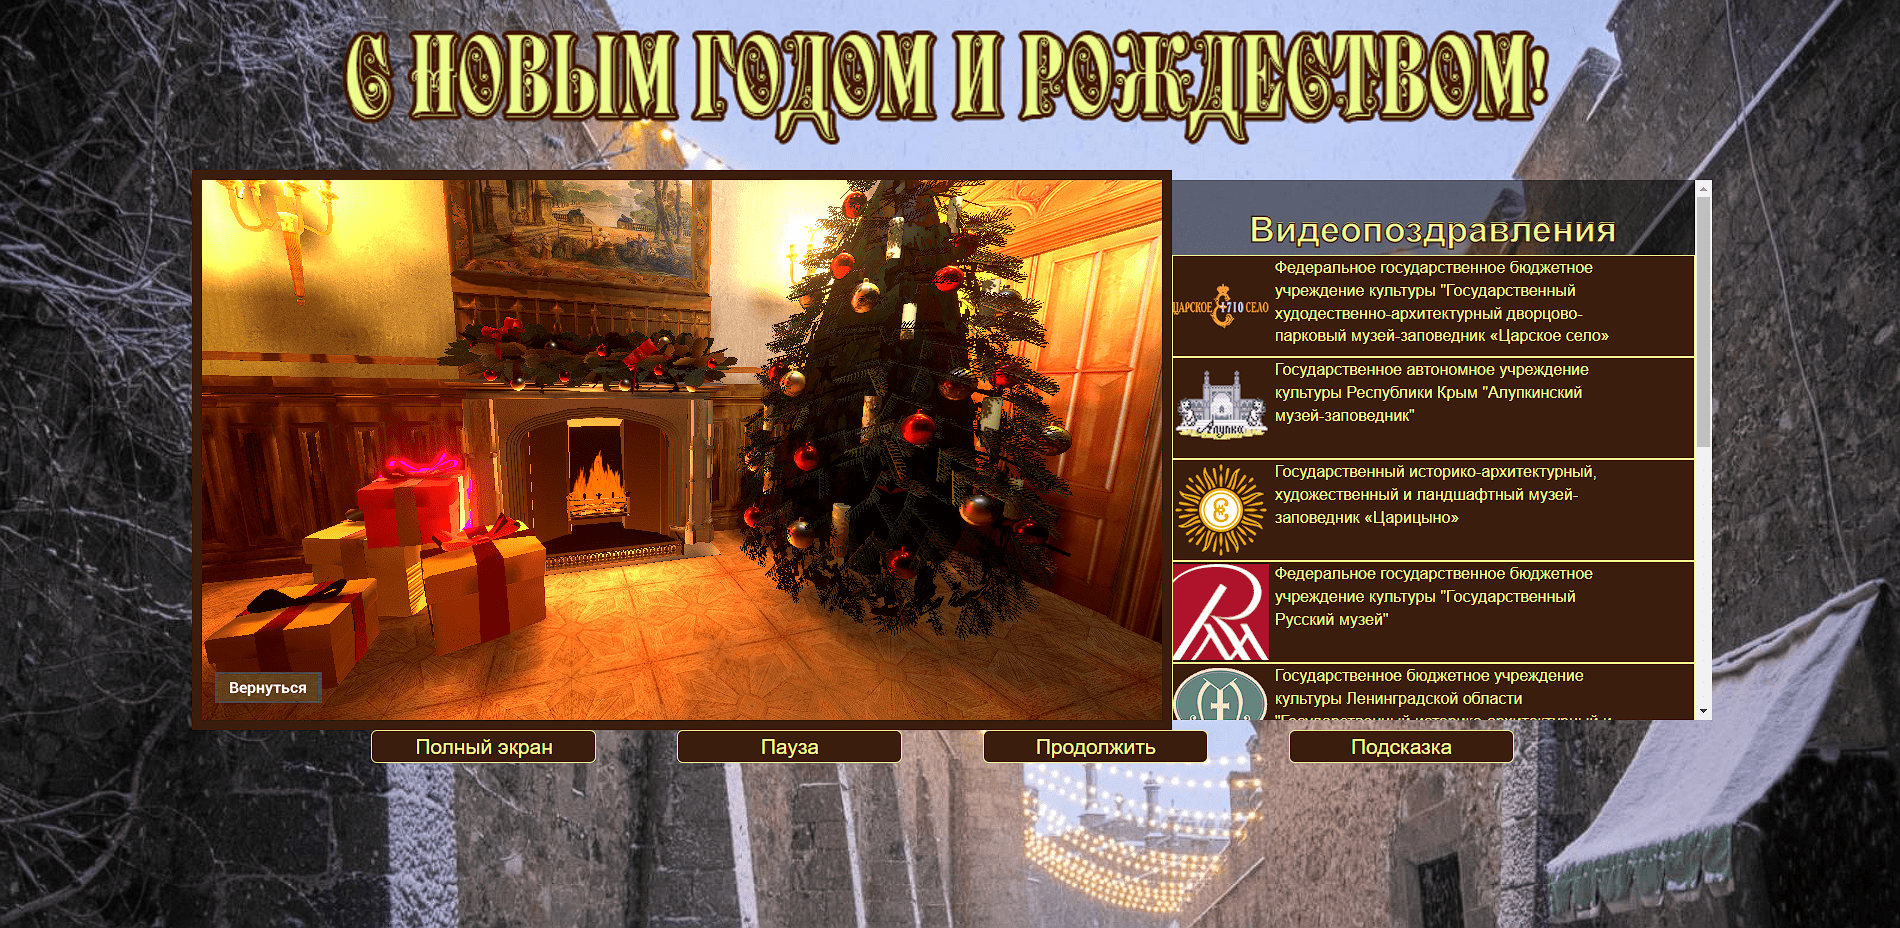 Подробнее о статье 3D открытка – новогоднее приложение от Воронцовского дворца